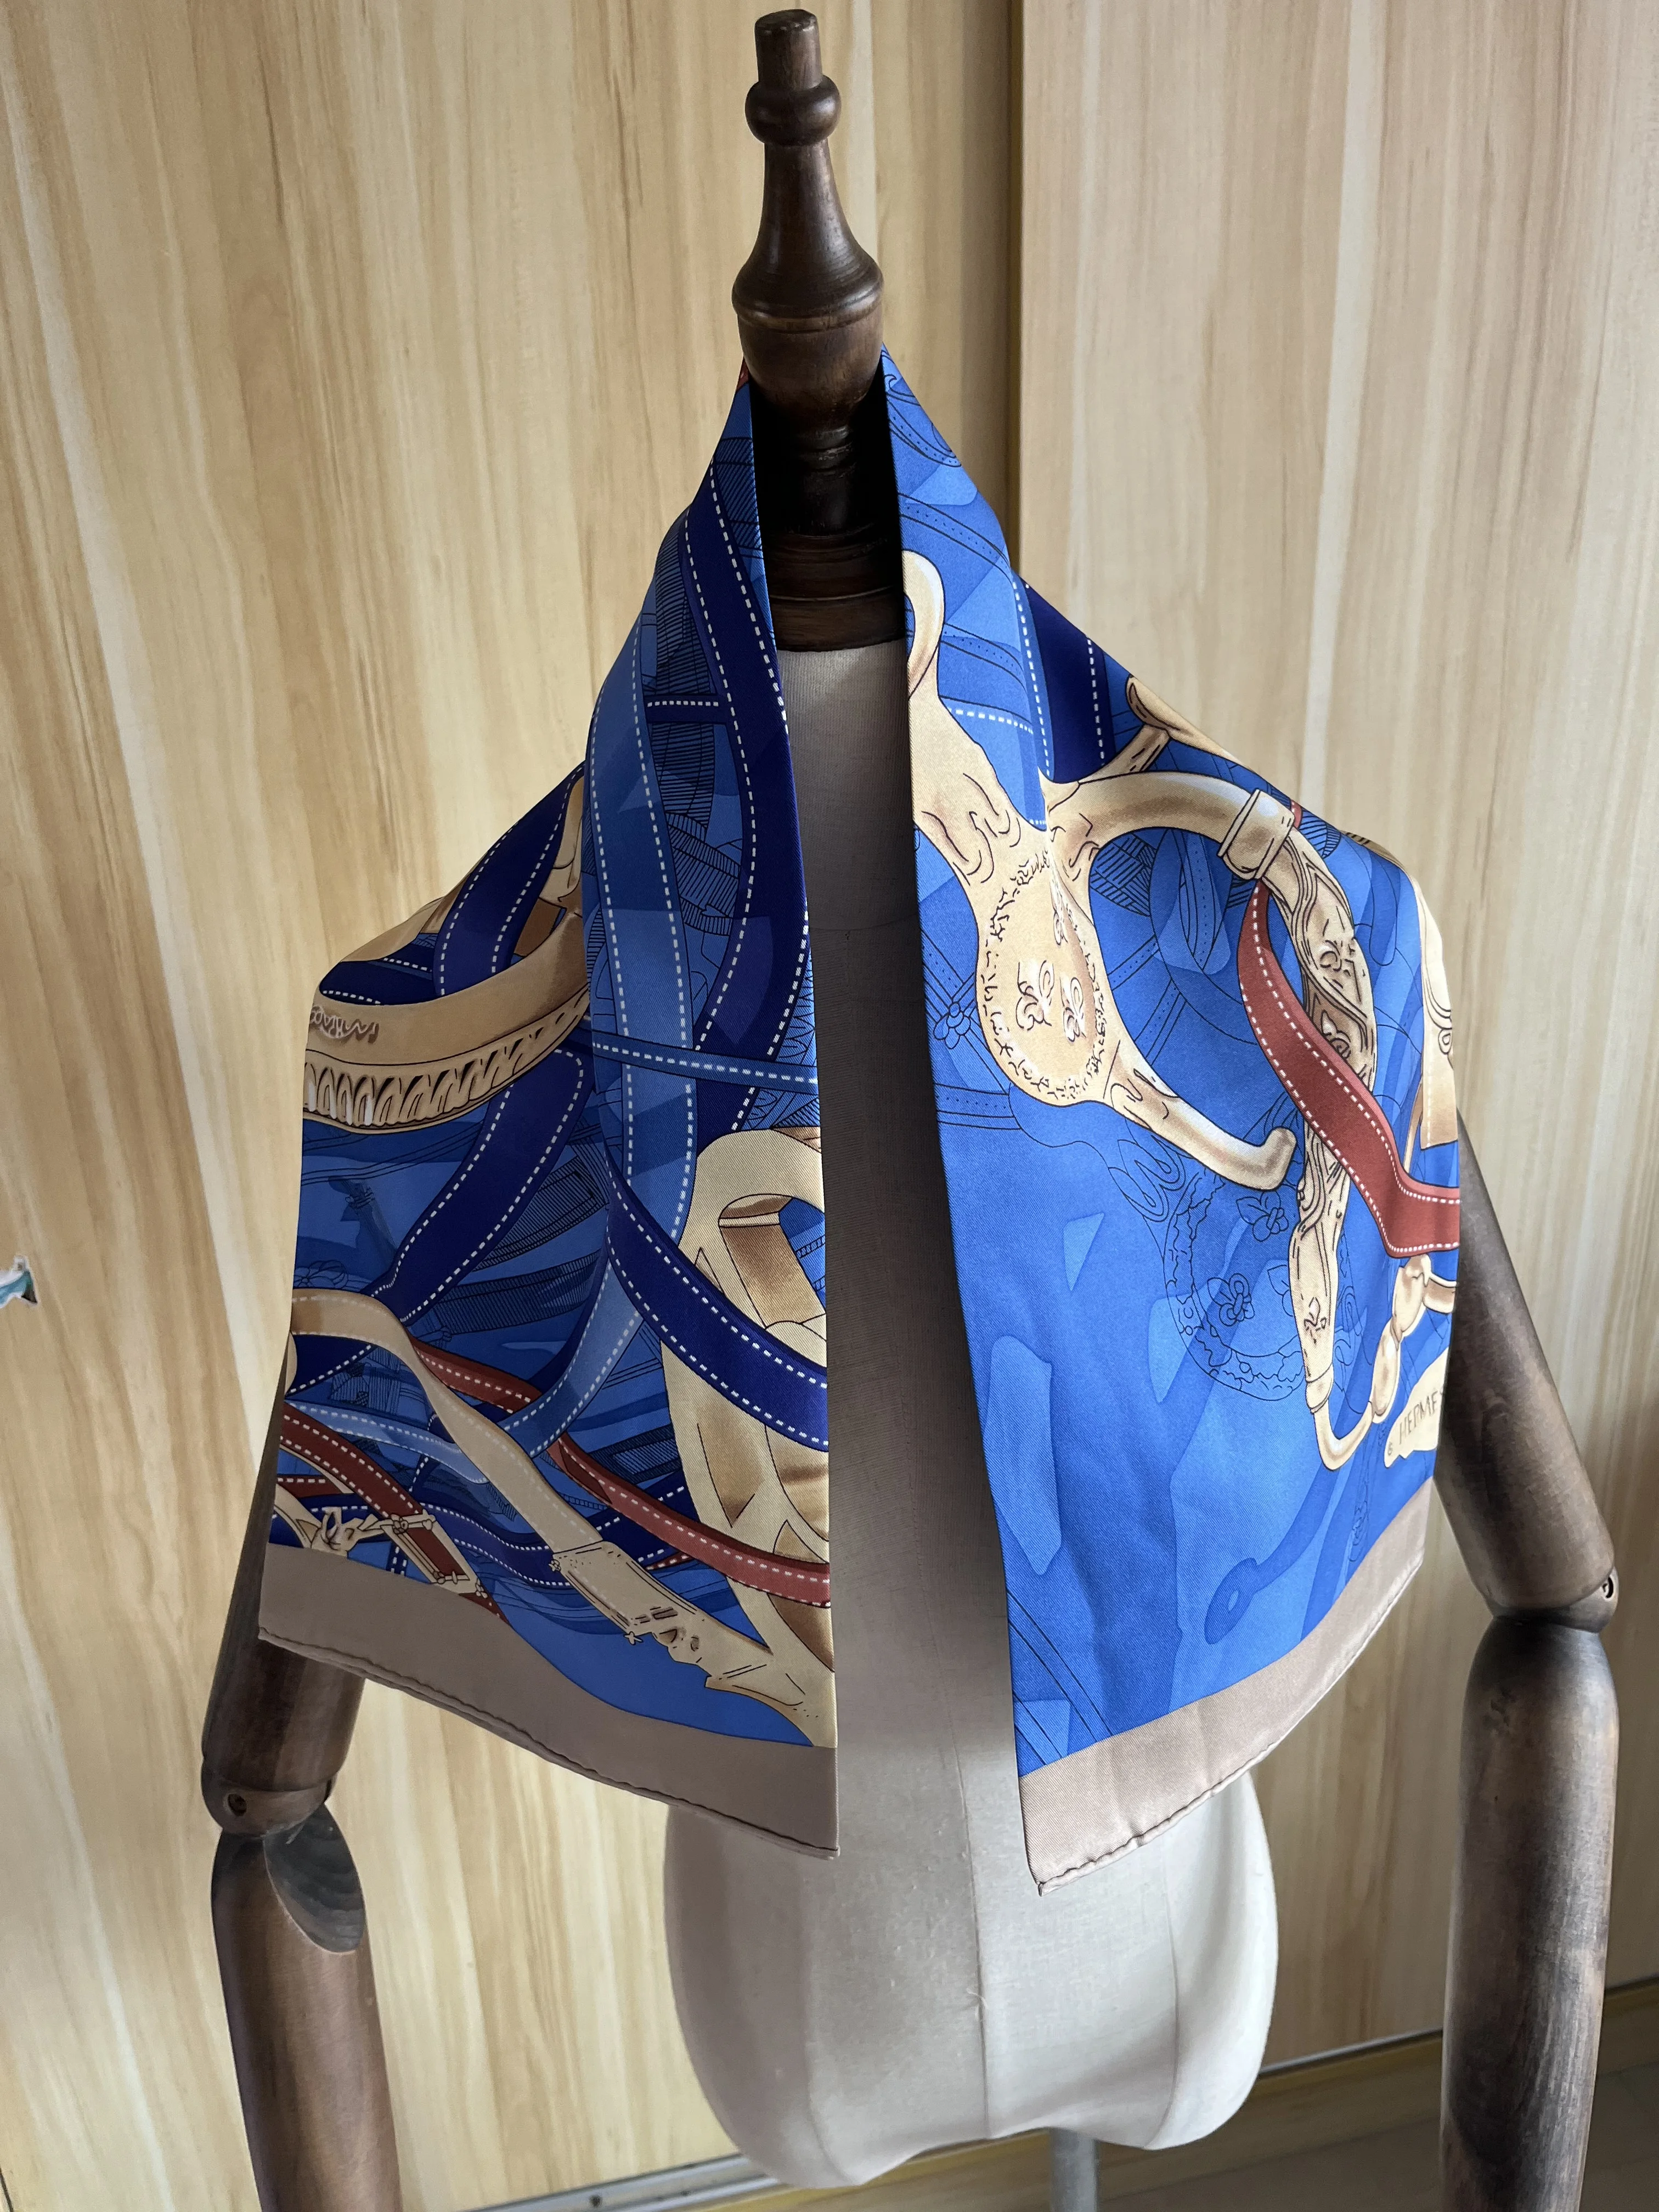 

2021 Новое поступление модный элегантный синий шарф-цепочка 100% шелковый шарф 90*90 см квадратная шаль саржевая накидка для женщин и девушек